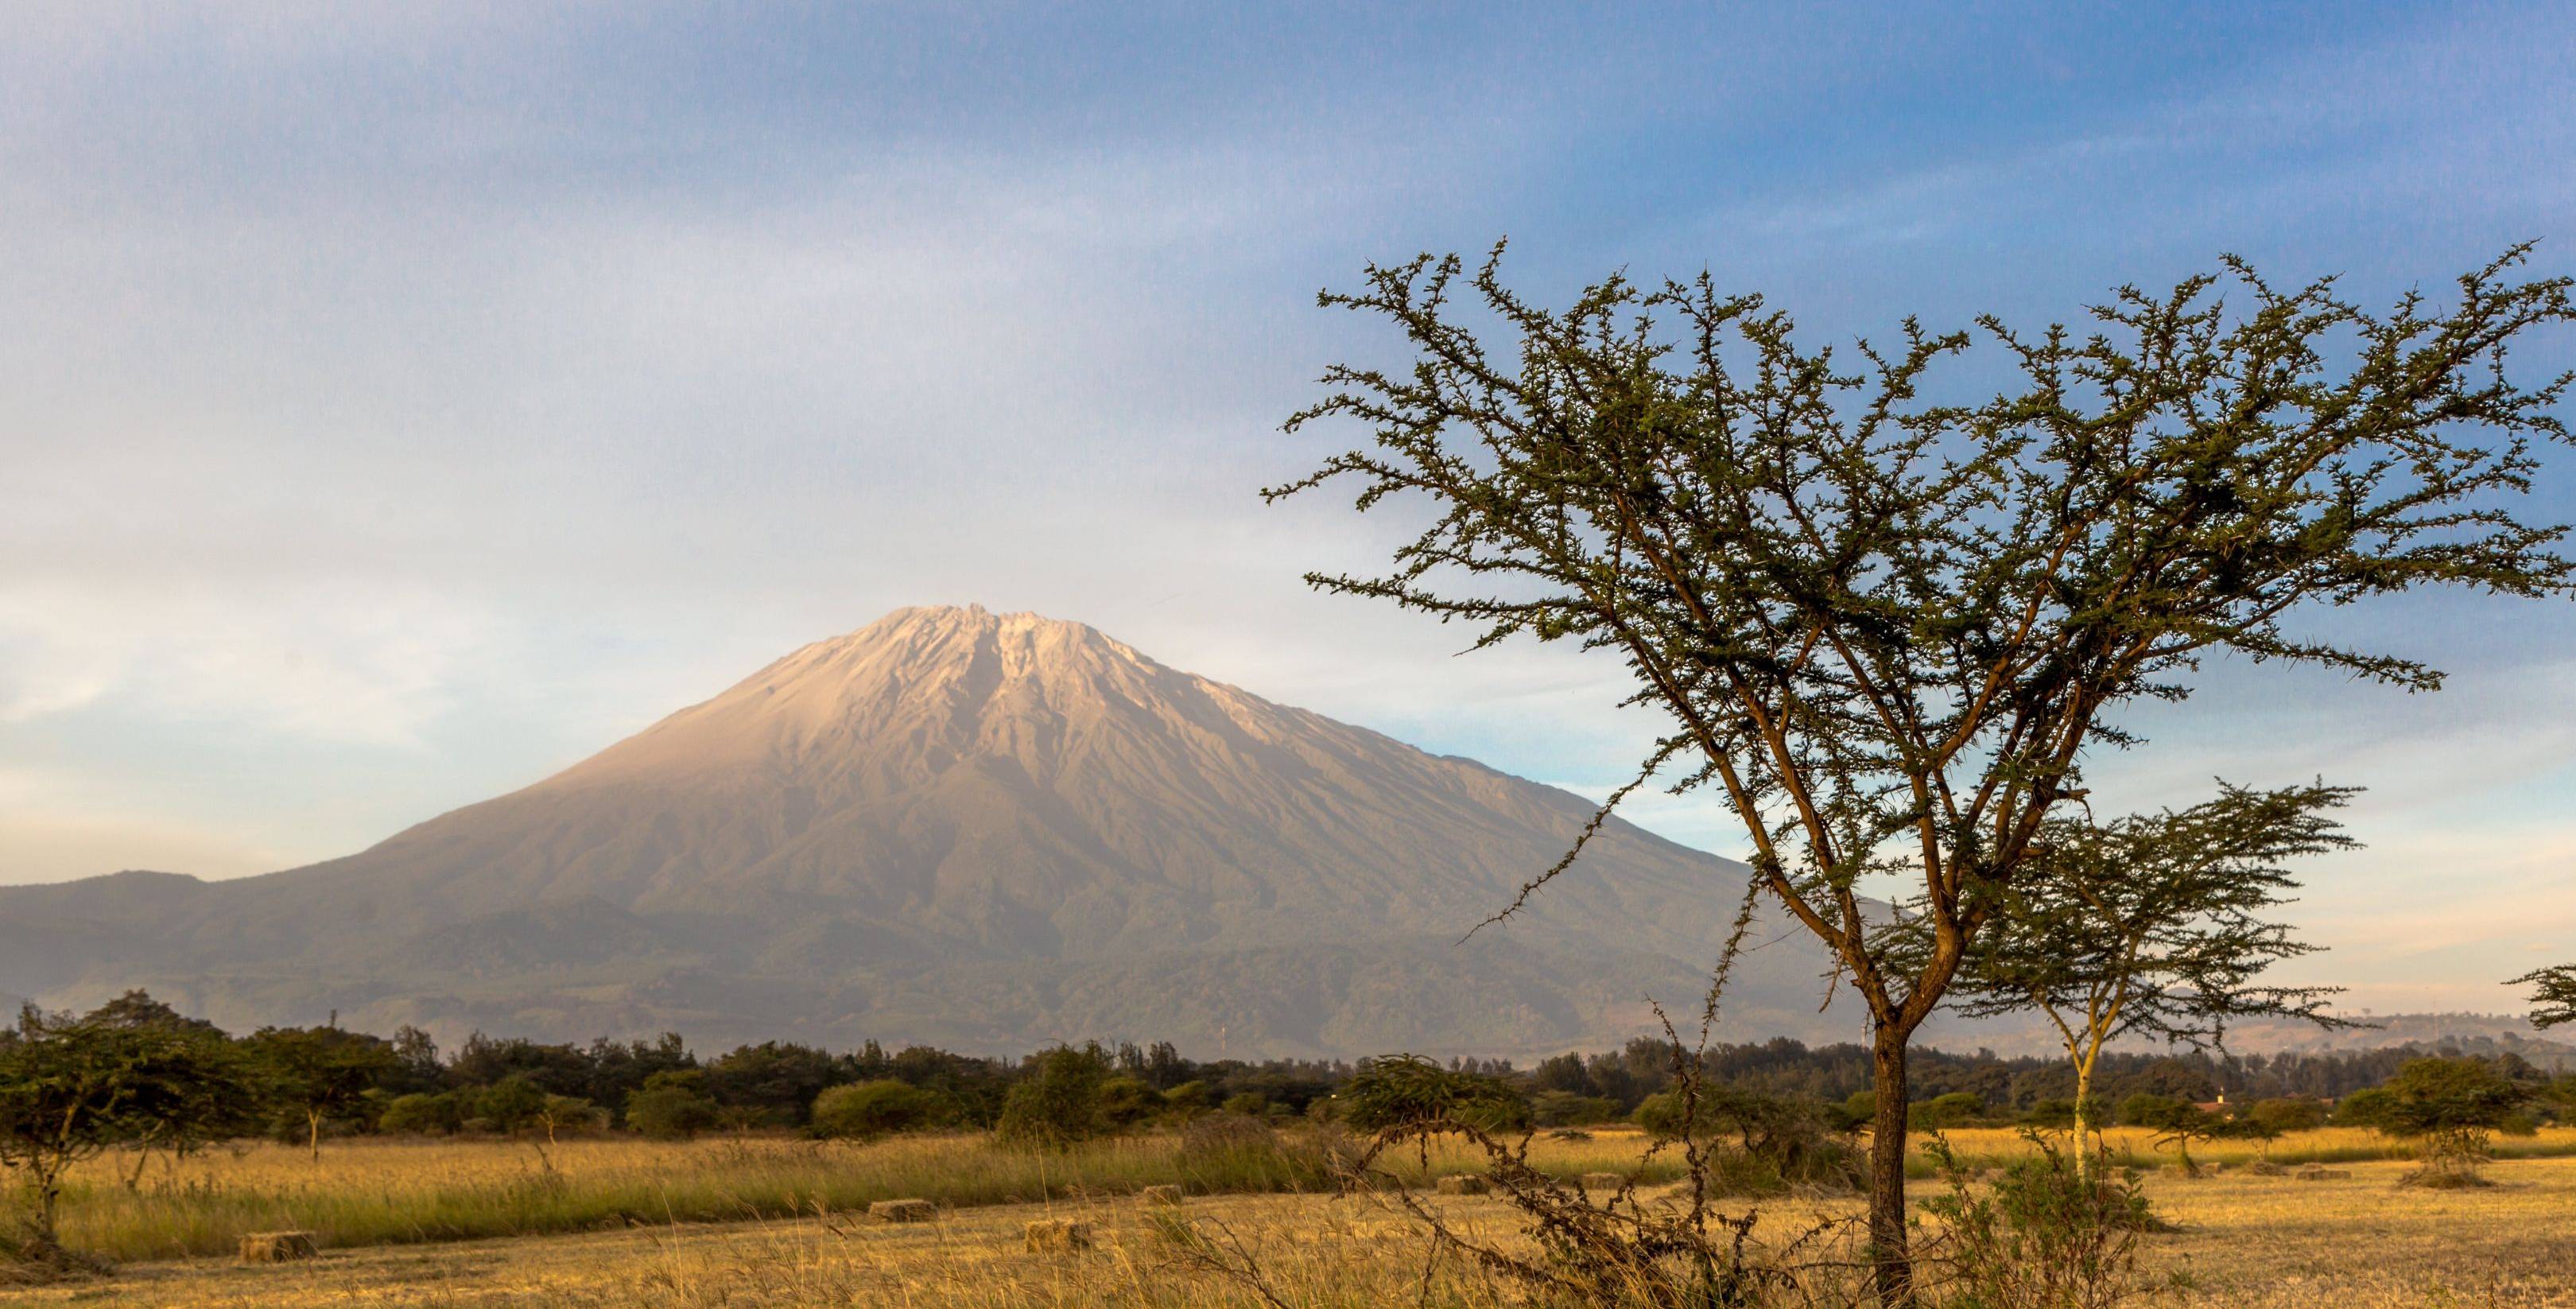 Llegada a Kilimanjaro / Arusha